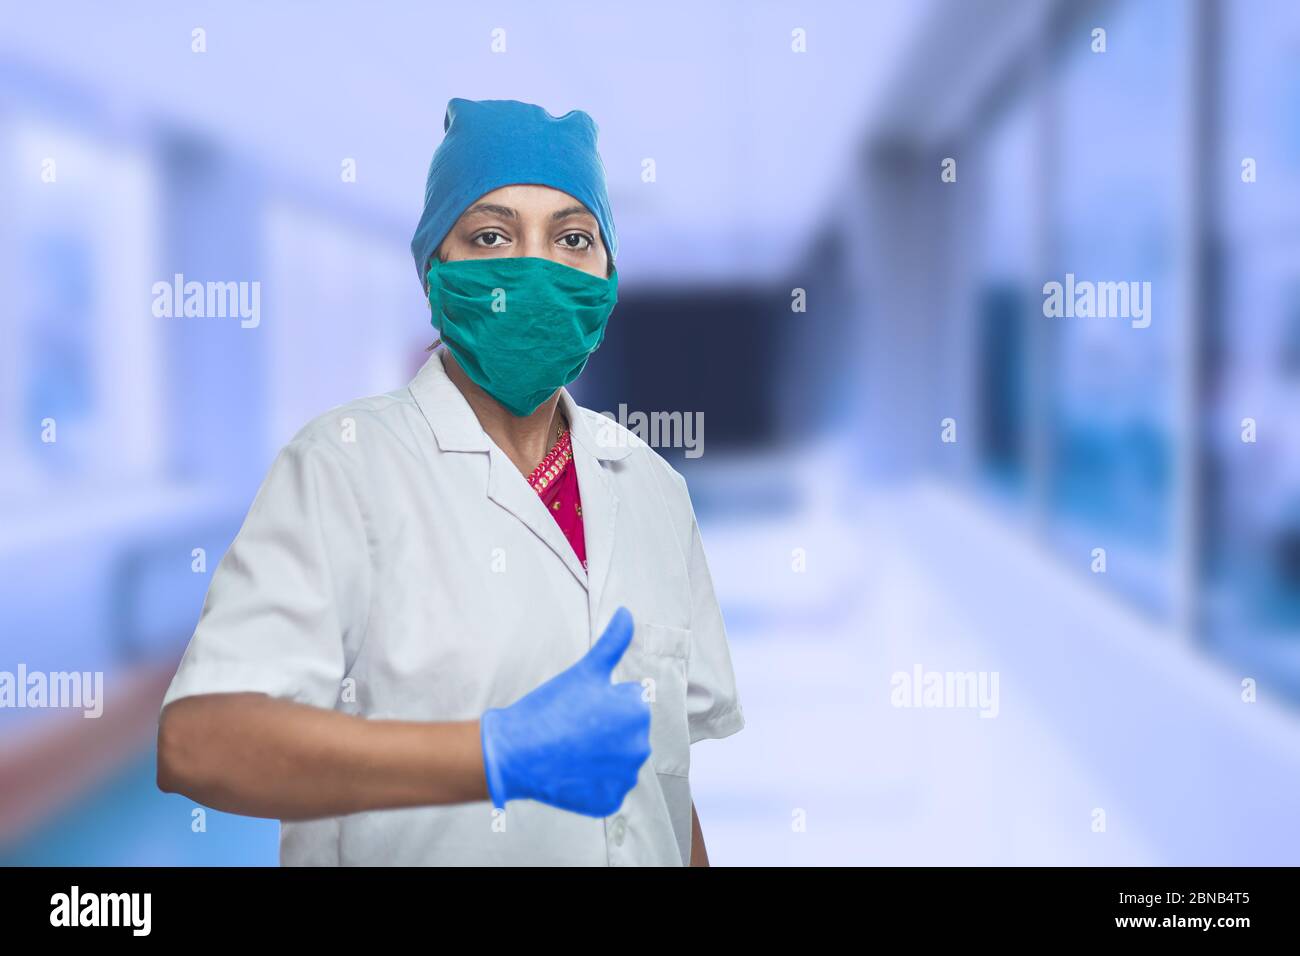 Ritratto di medico lavoratore femminile medico medico indossando maschera chirurgica e cappuccio facendo Thumbs Up, OK segno, eccellente segno. Corridoio esterno dell'ospedale. Covid-19 Foto Stock